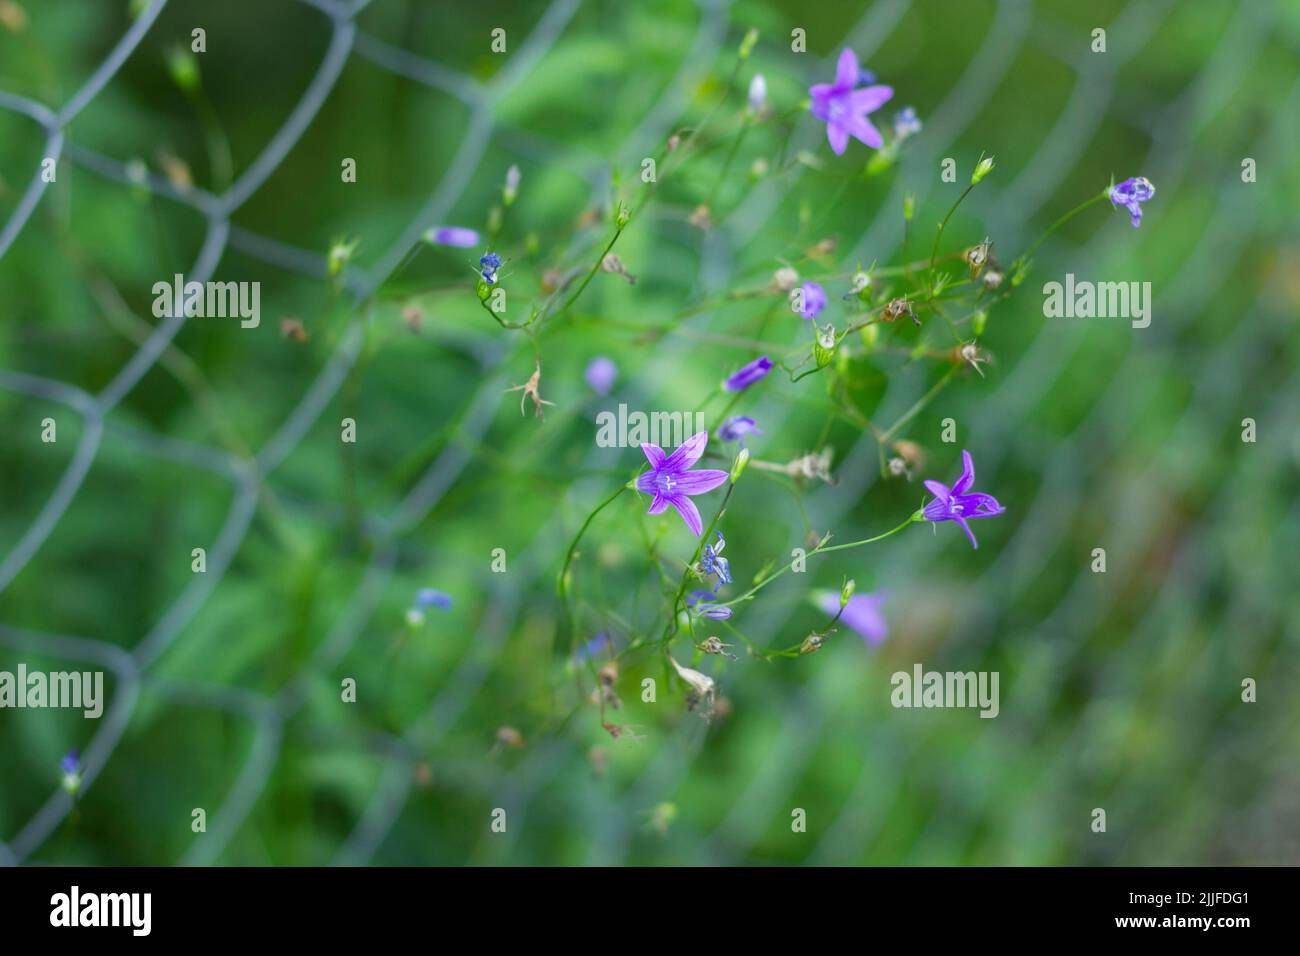 Lila flores silvestres bluebells con un capullo, contra el fondo de una rejilla de hierro en hierba verde Foto de stock